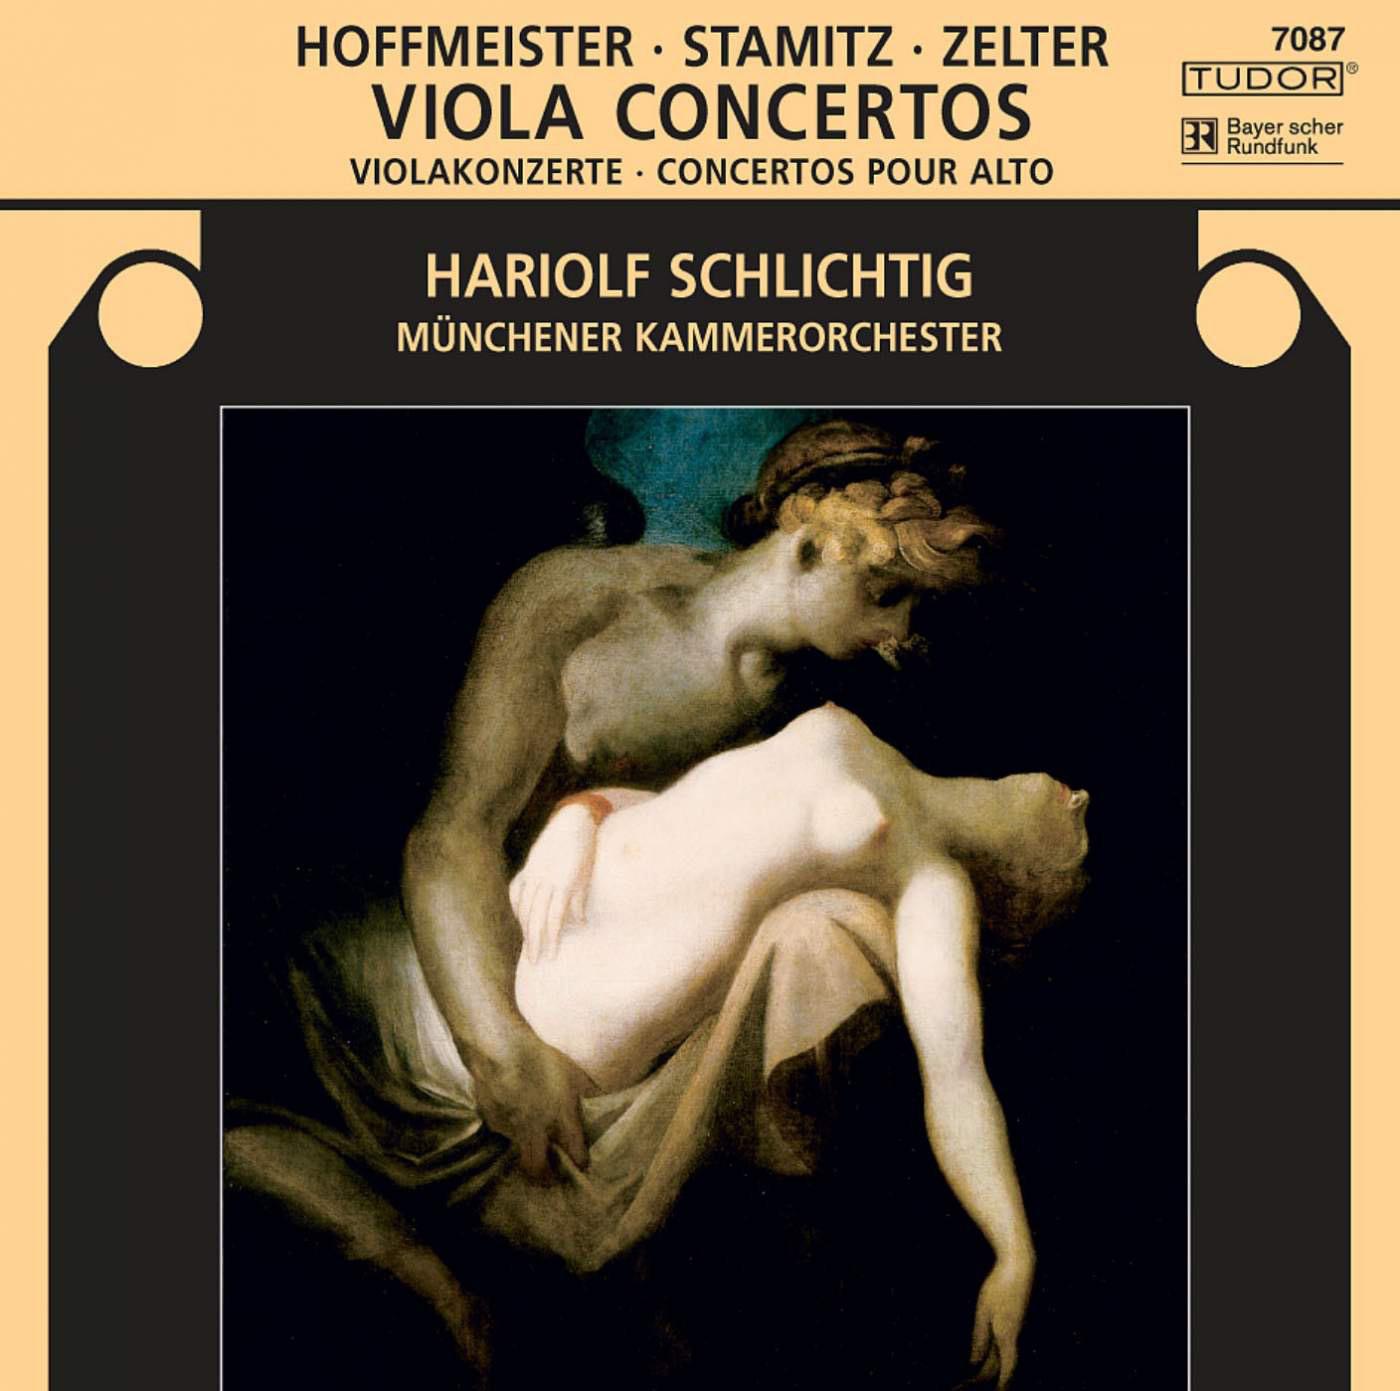 STAMITZ, C.: Viola Concerto, Op. 1 / HOFFMEISTER, F.A.: Viola Concerto in D Major / ZELTER, C.F.: Viola Concerto in E-Flat Major (Schlichtig)